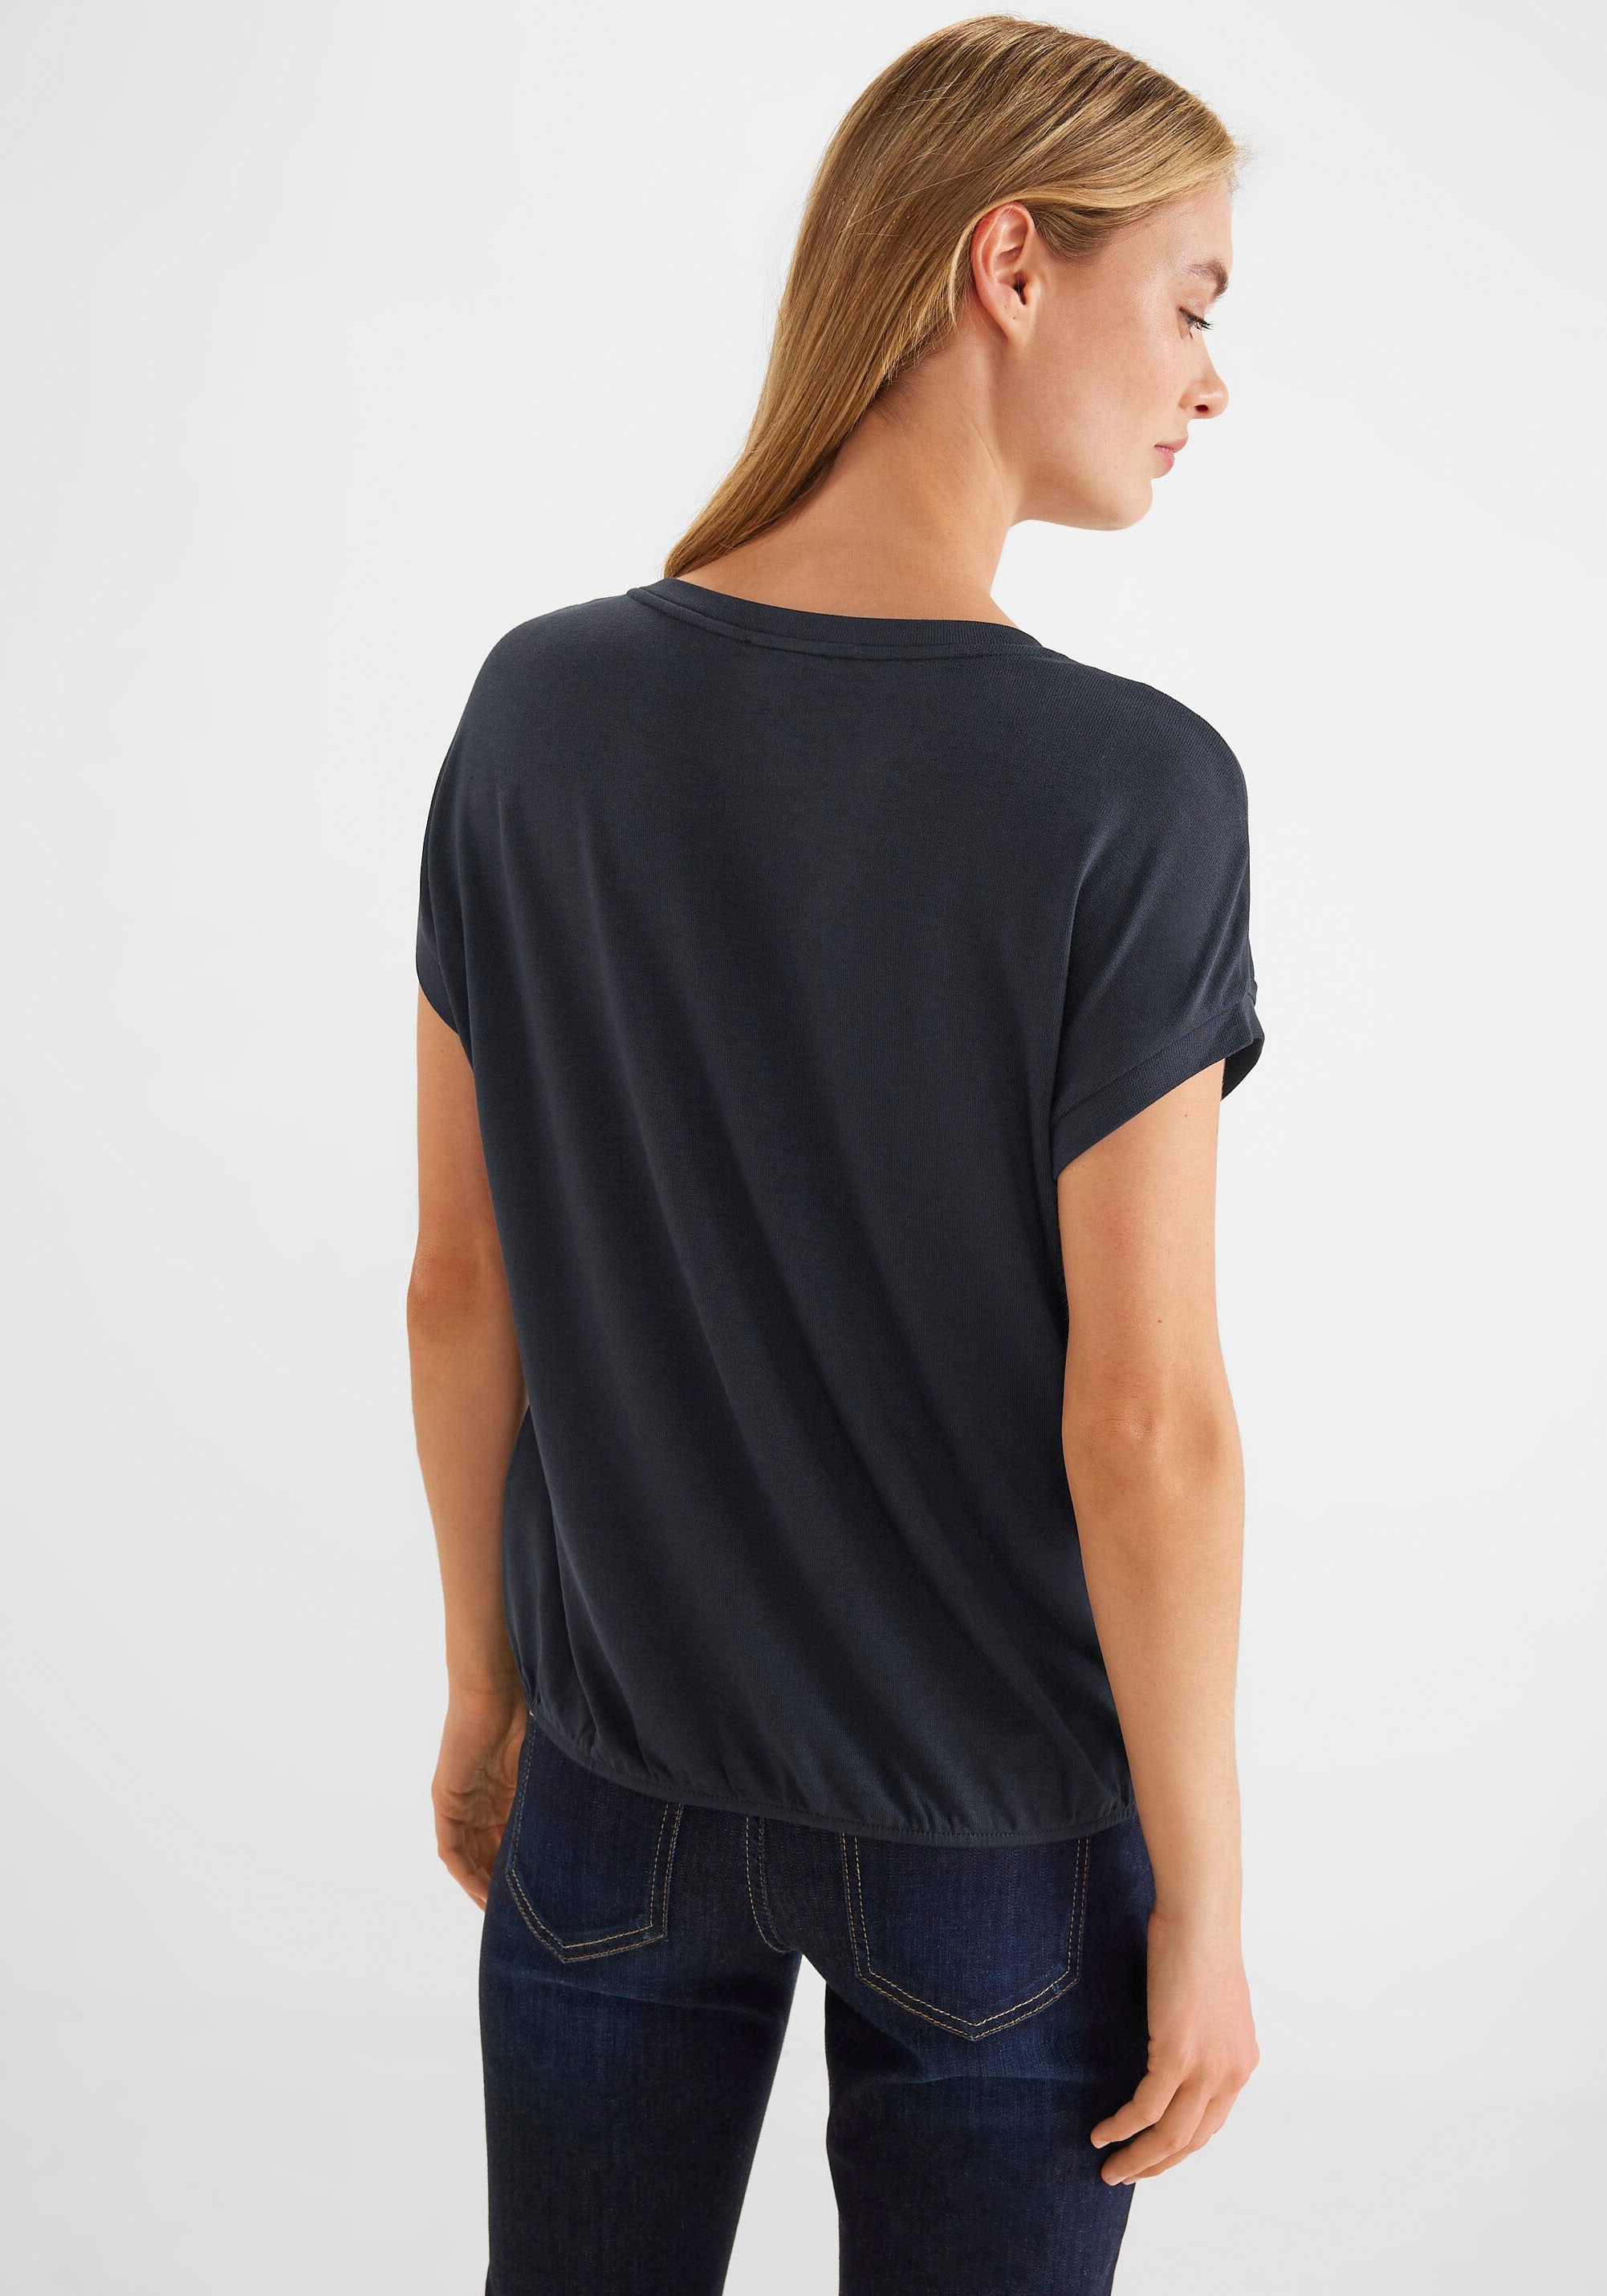 OTTO Shop Schultern im ONE STREET mit kaufen überschnittenen Shirttop, Online